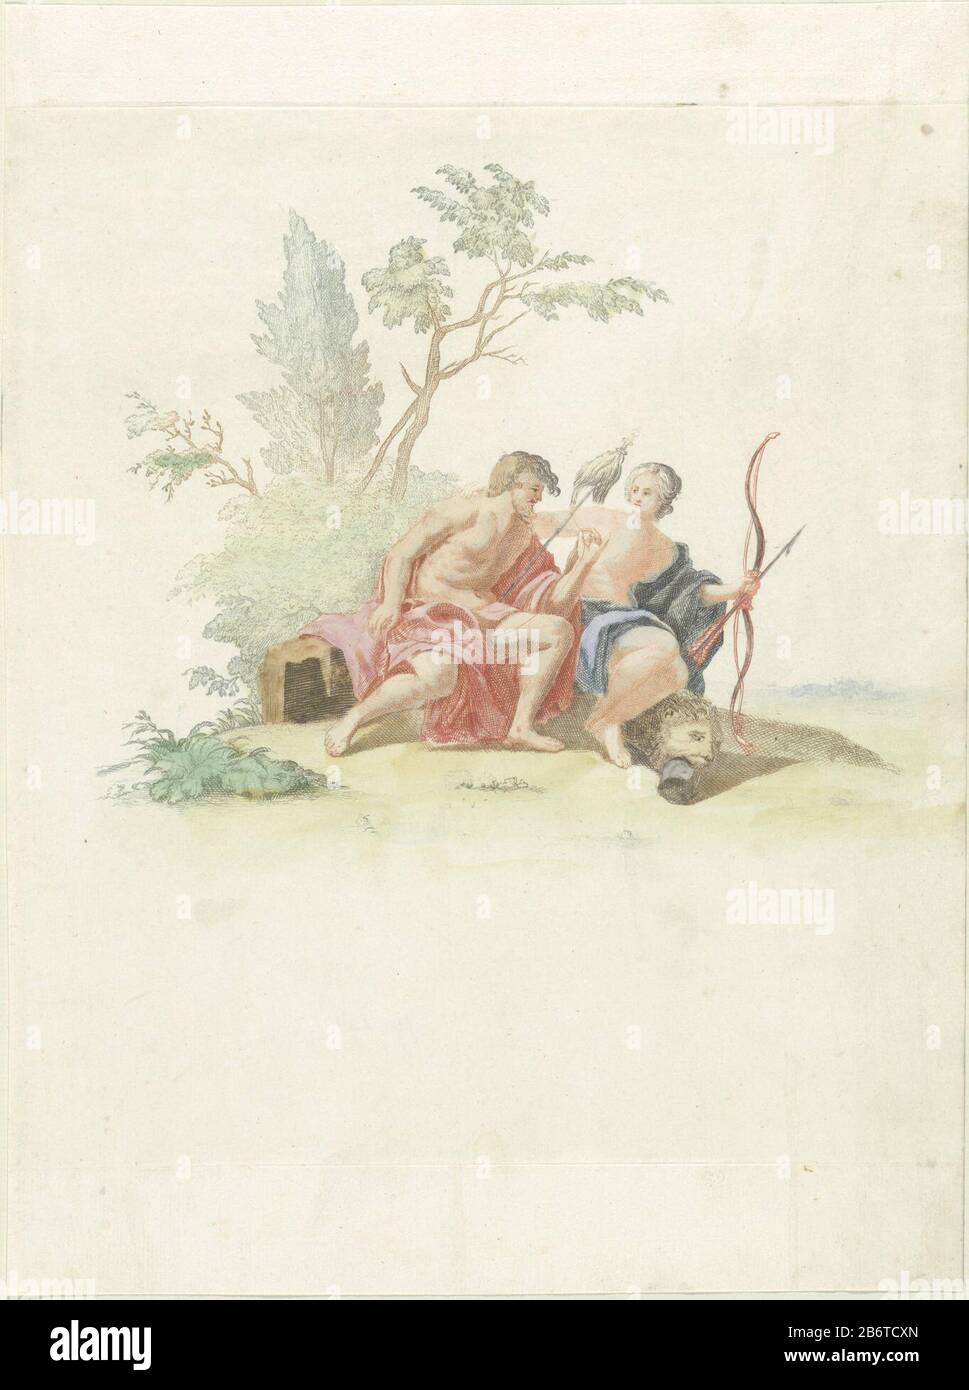 Hercules en Omphale Hercules se trouve à côté d'Omphale, reine de Lydia, qu'un bras ha l'a battu. En tant qu'esclave au service d'Omphale Hercules était effeminate. Il a son dipersonnel dans ses mains. Elle a son arc et sa flèche et la peau du lion et le club situé sur sa voeten. Fabricant : printmaker: Supervision anonyme Johan Teylerstraat Lieu de fabrication: Pays-Bas Date: 1688 - 1698 Caractéristiques physiques: Gravure et engrama à la poupée en vert, bleu, marron, rouge et noir, de couleur orange, rouge, vert et bleu: Papier: Technique: gravure / engrala (impression) / à la poupée / couleur / Banque D'Images